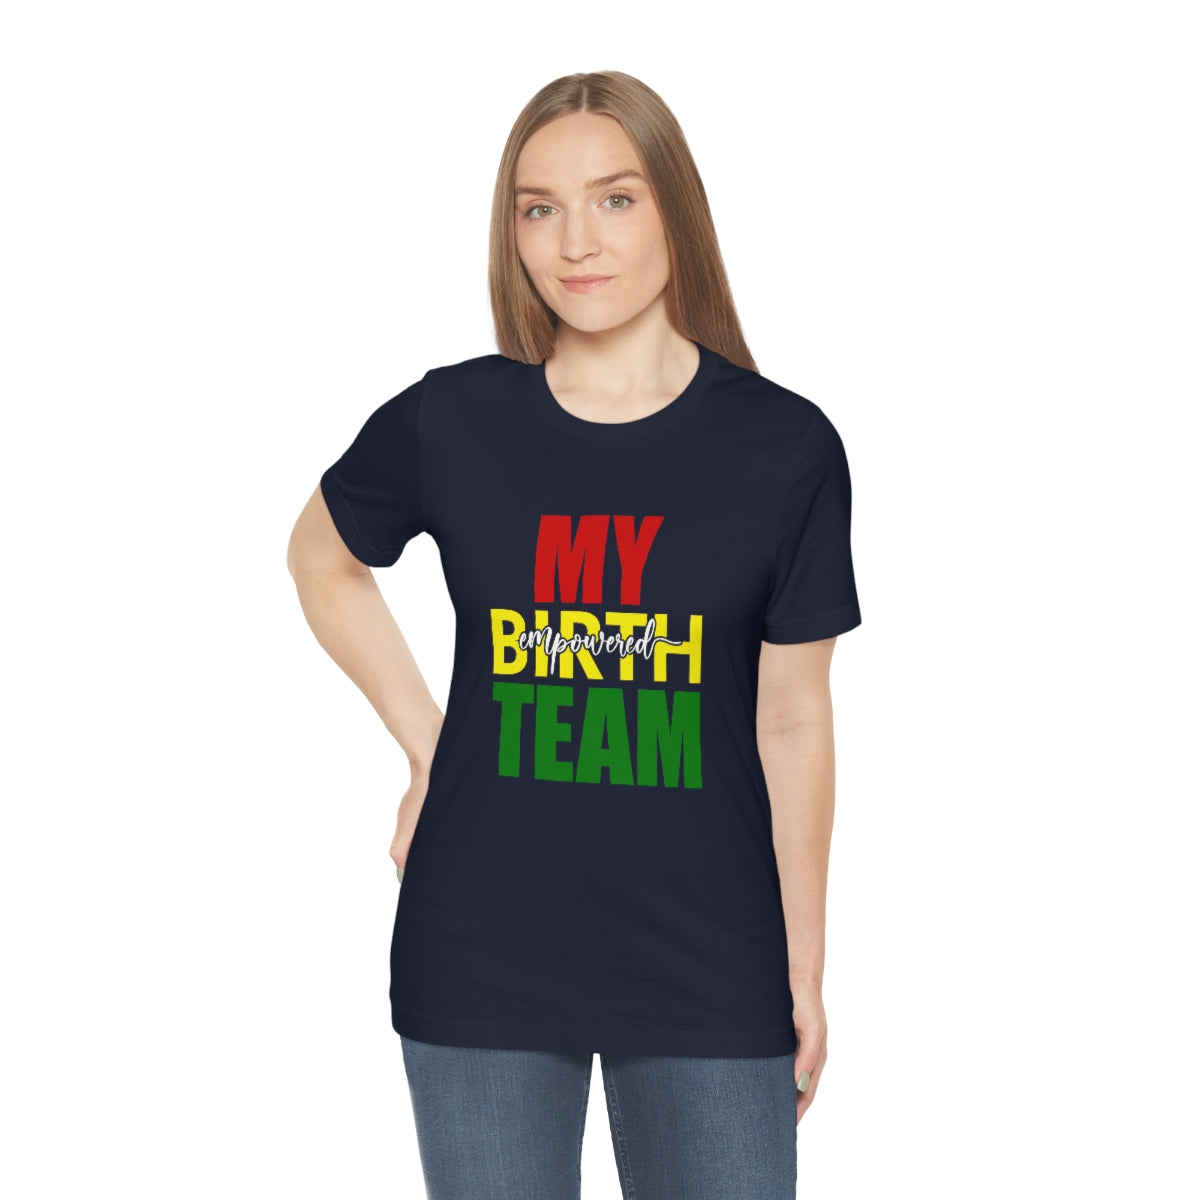 My Empowered Birth Team-Unisex Tee